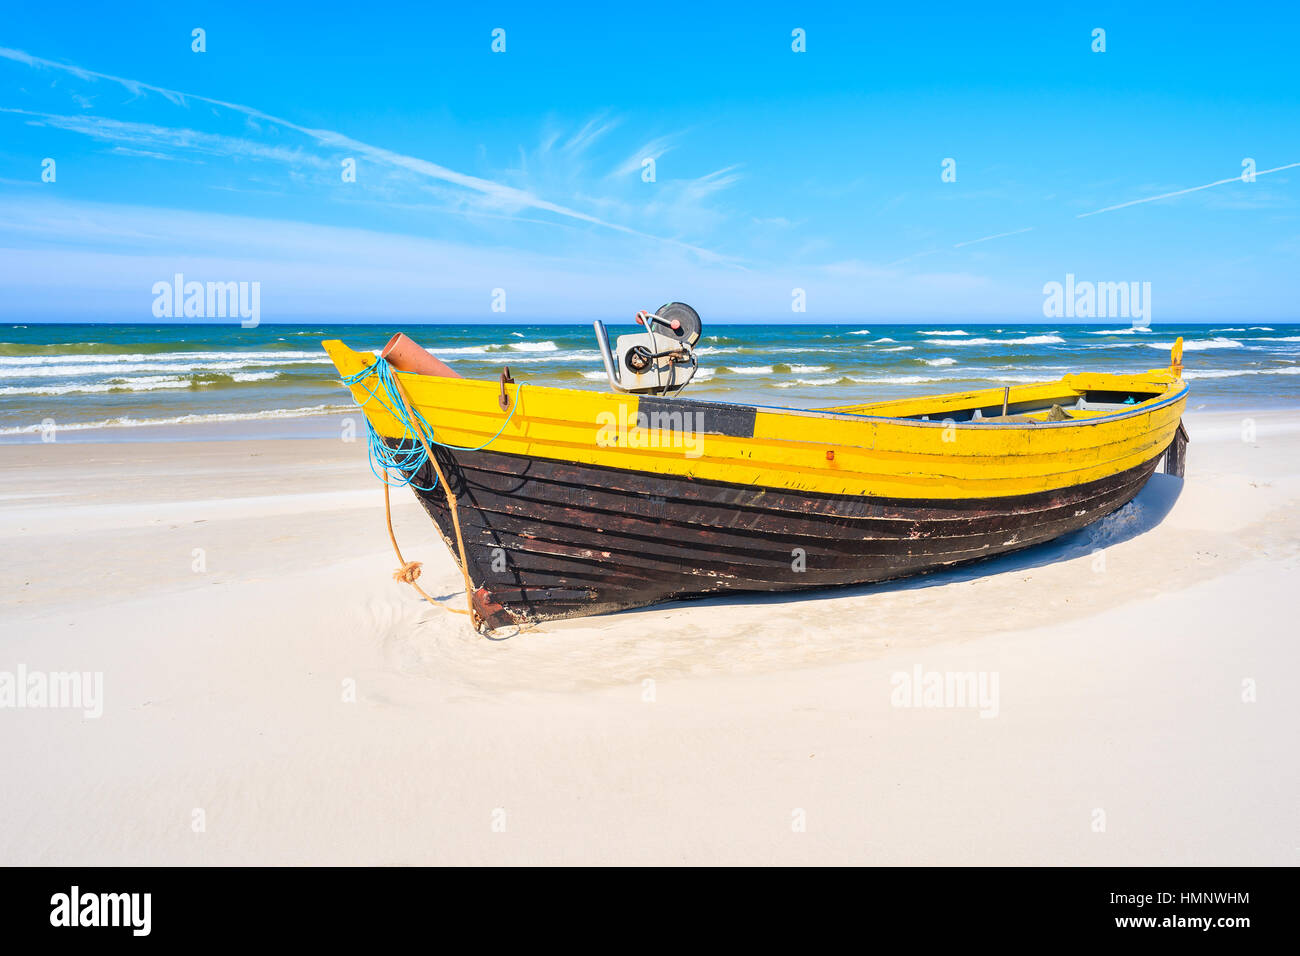 Bateau de pêche colorés sur la plage de sable, côte de Debki Mer Baltique, Pologne Banque D'Images